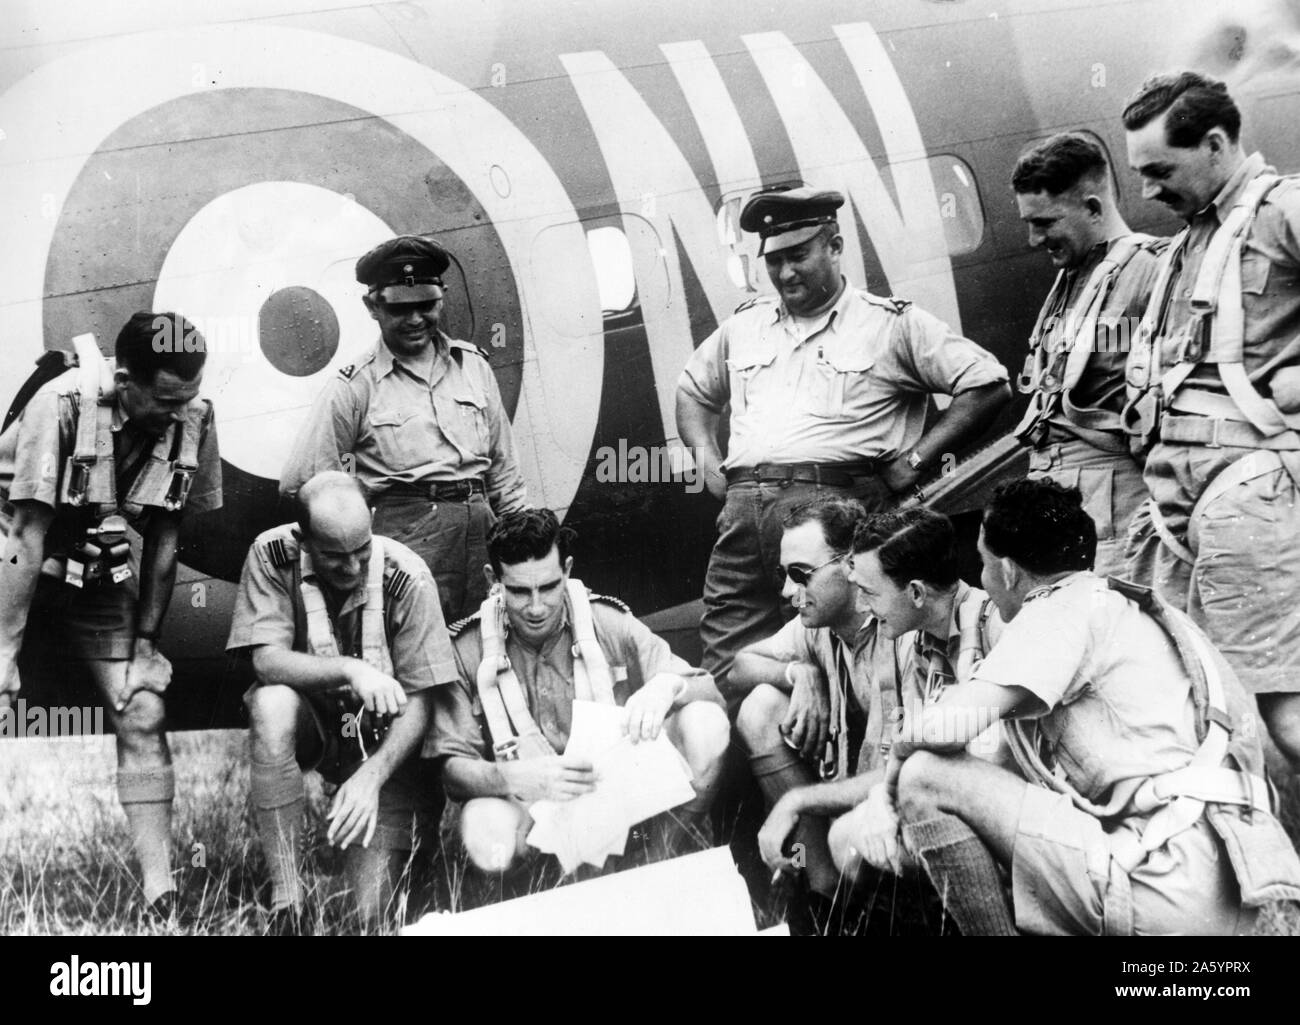 Dutch Air Force en Malaisie britannique. La photographie montre le Néerlandais et 10 officiers de la Royal Air Force à discuter des plans de patrouille aux côtés d'un avion. Entre 1941 et 1942. Banque D'Images